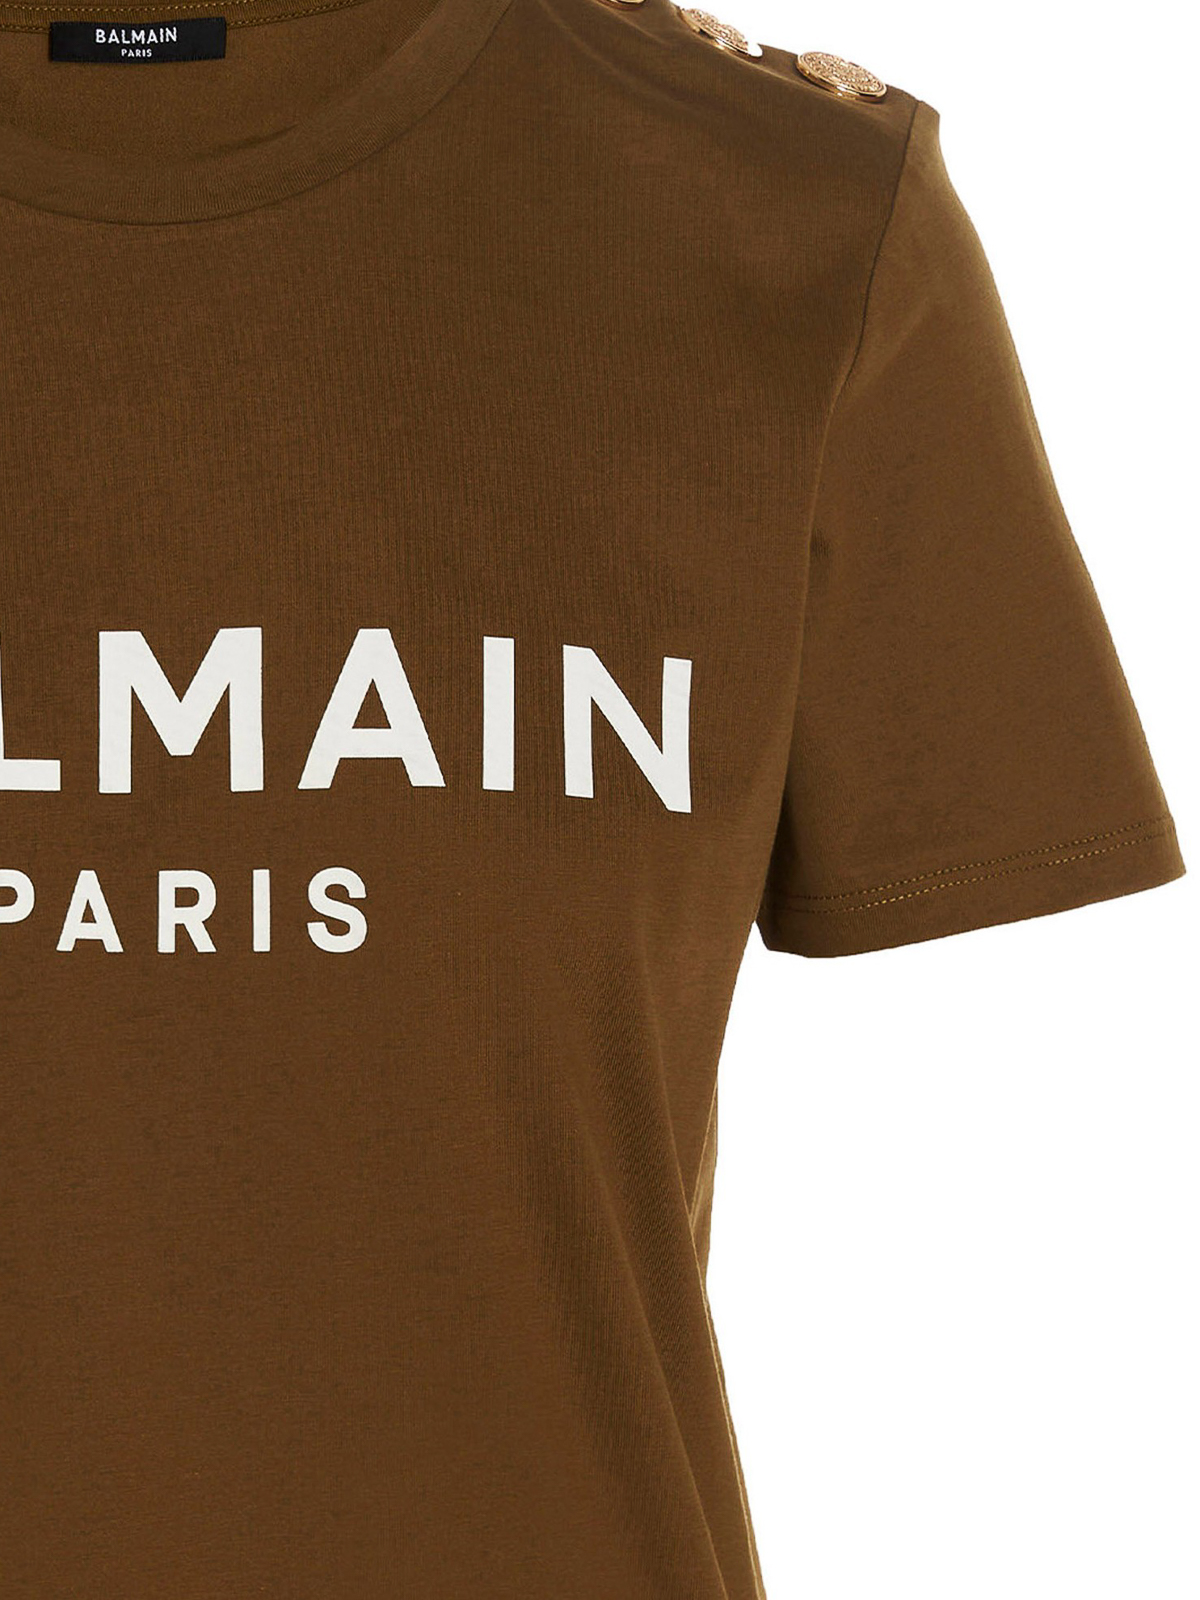 Balmain T-shirt Herren Farbe Braun In Brown